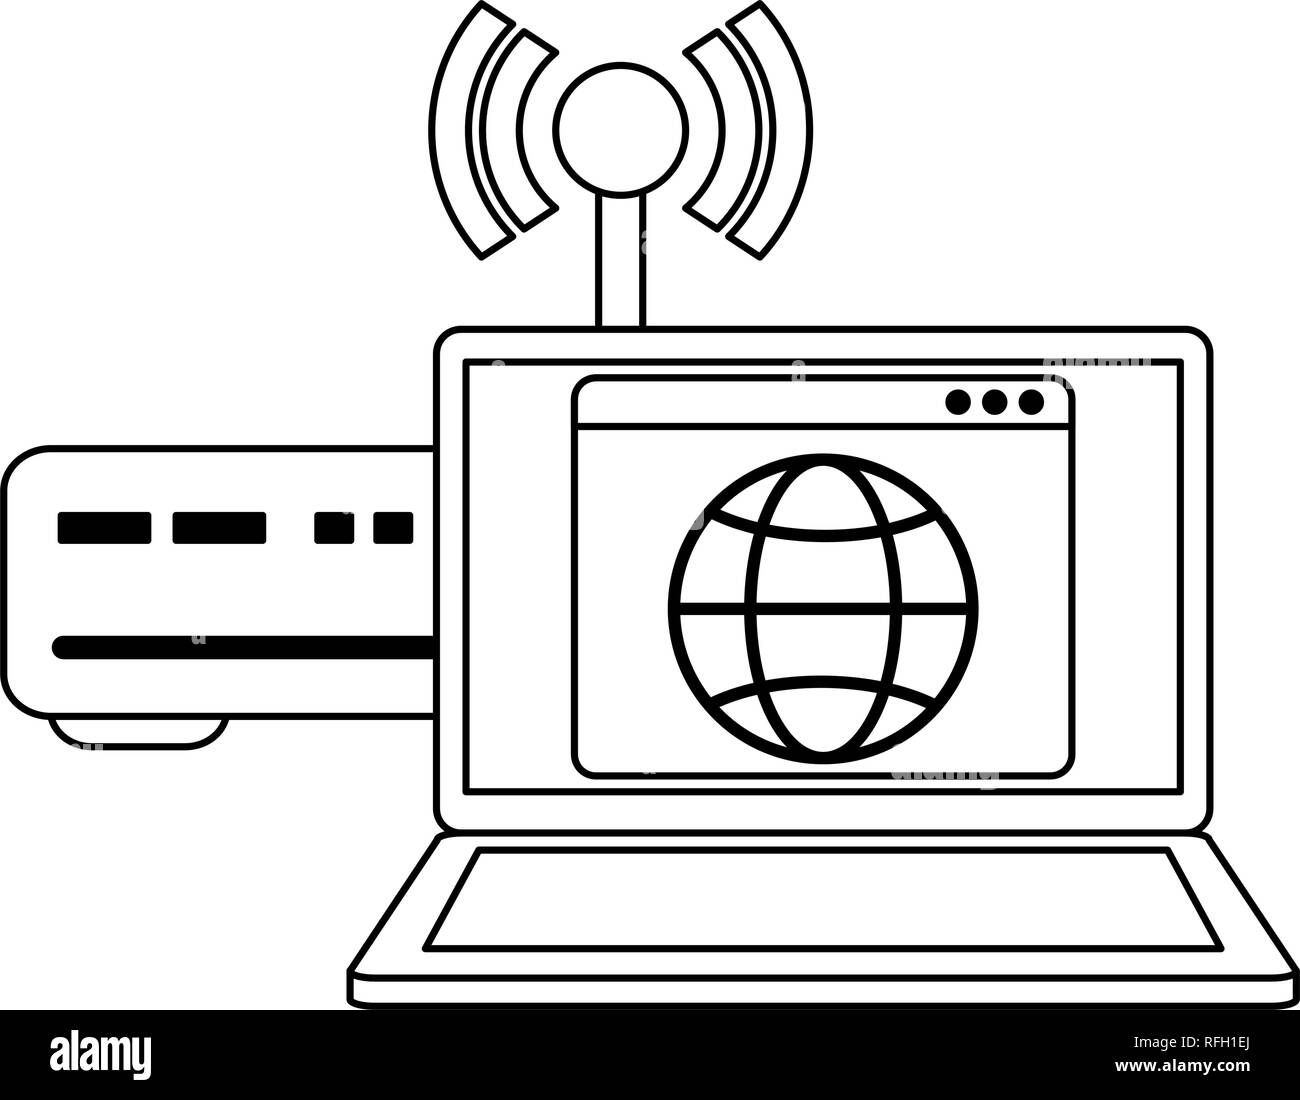 Ordinateur portable avec wifi routeur symbole internet en noir et blanc  Image Vectorielle Stock - Alamy